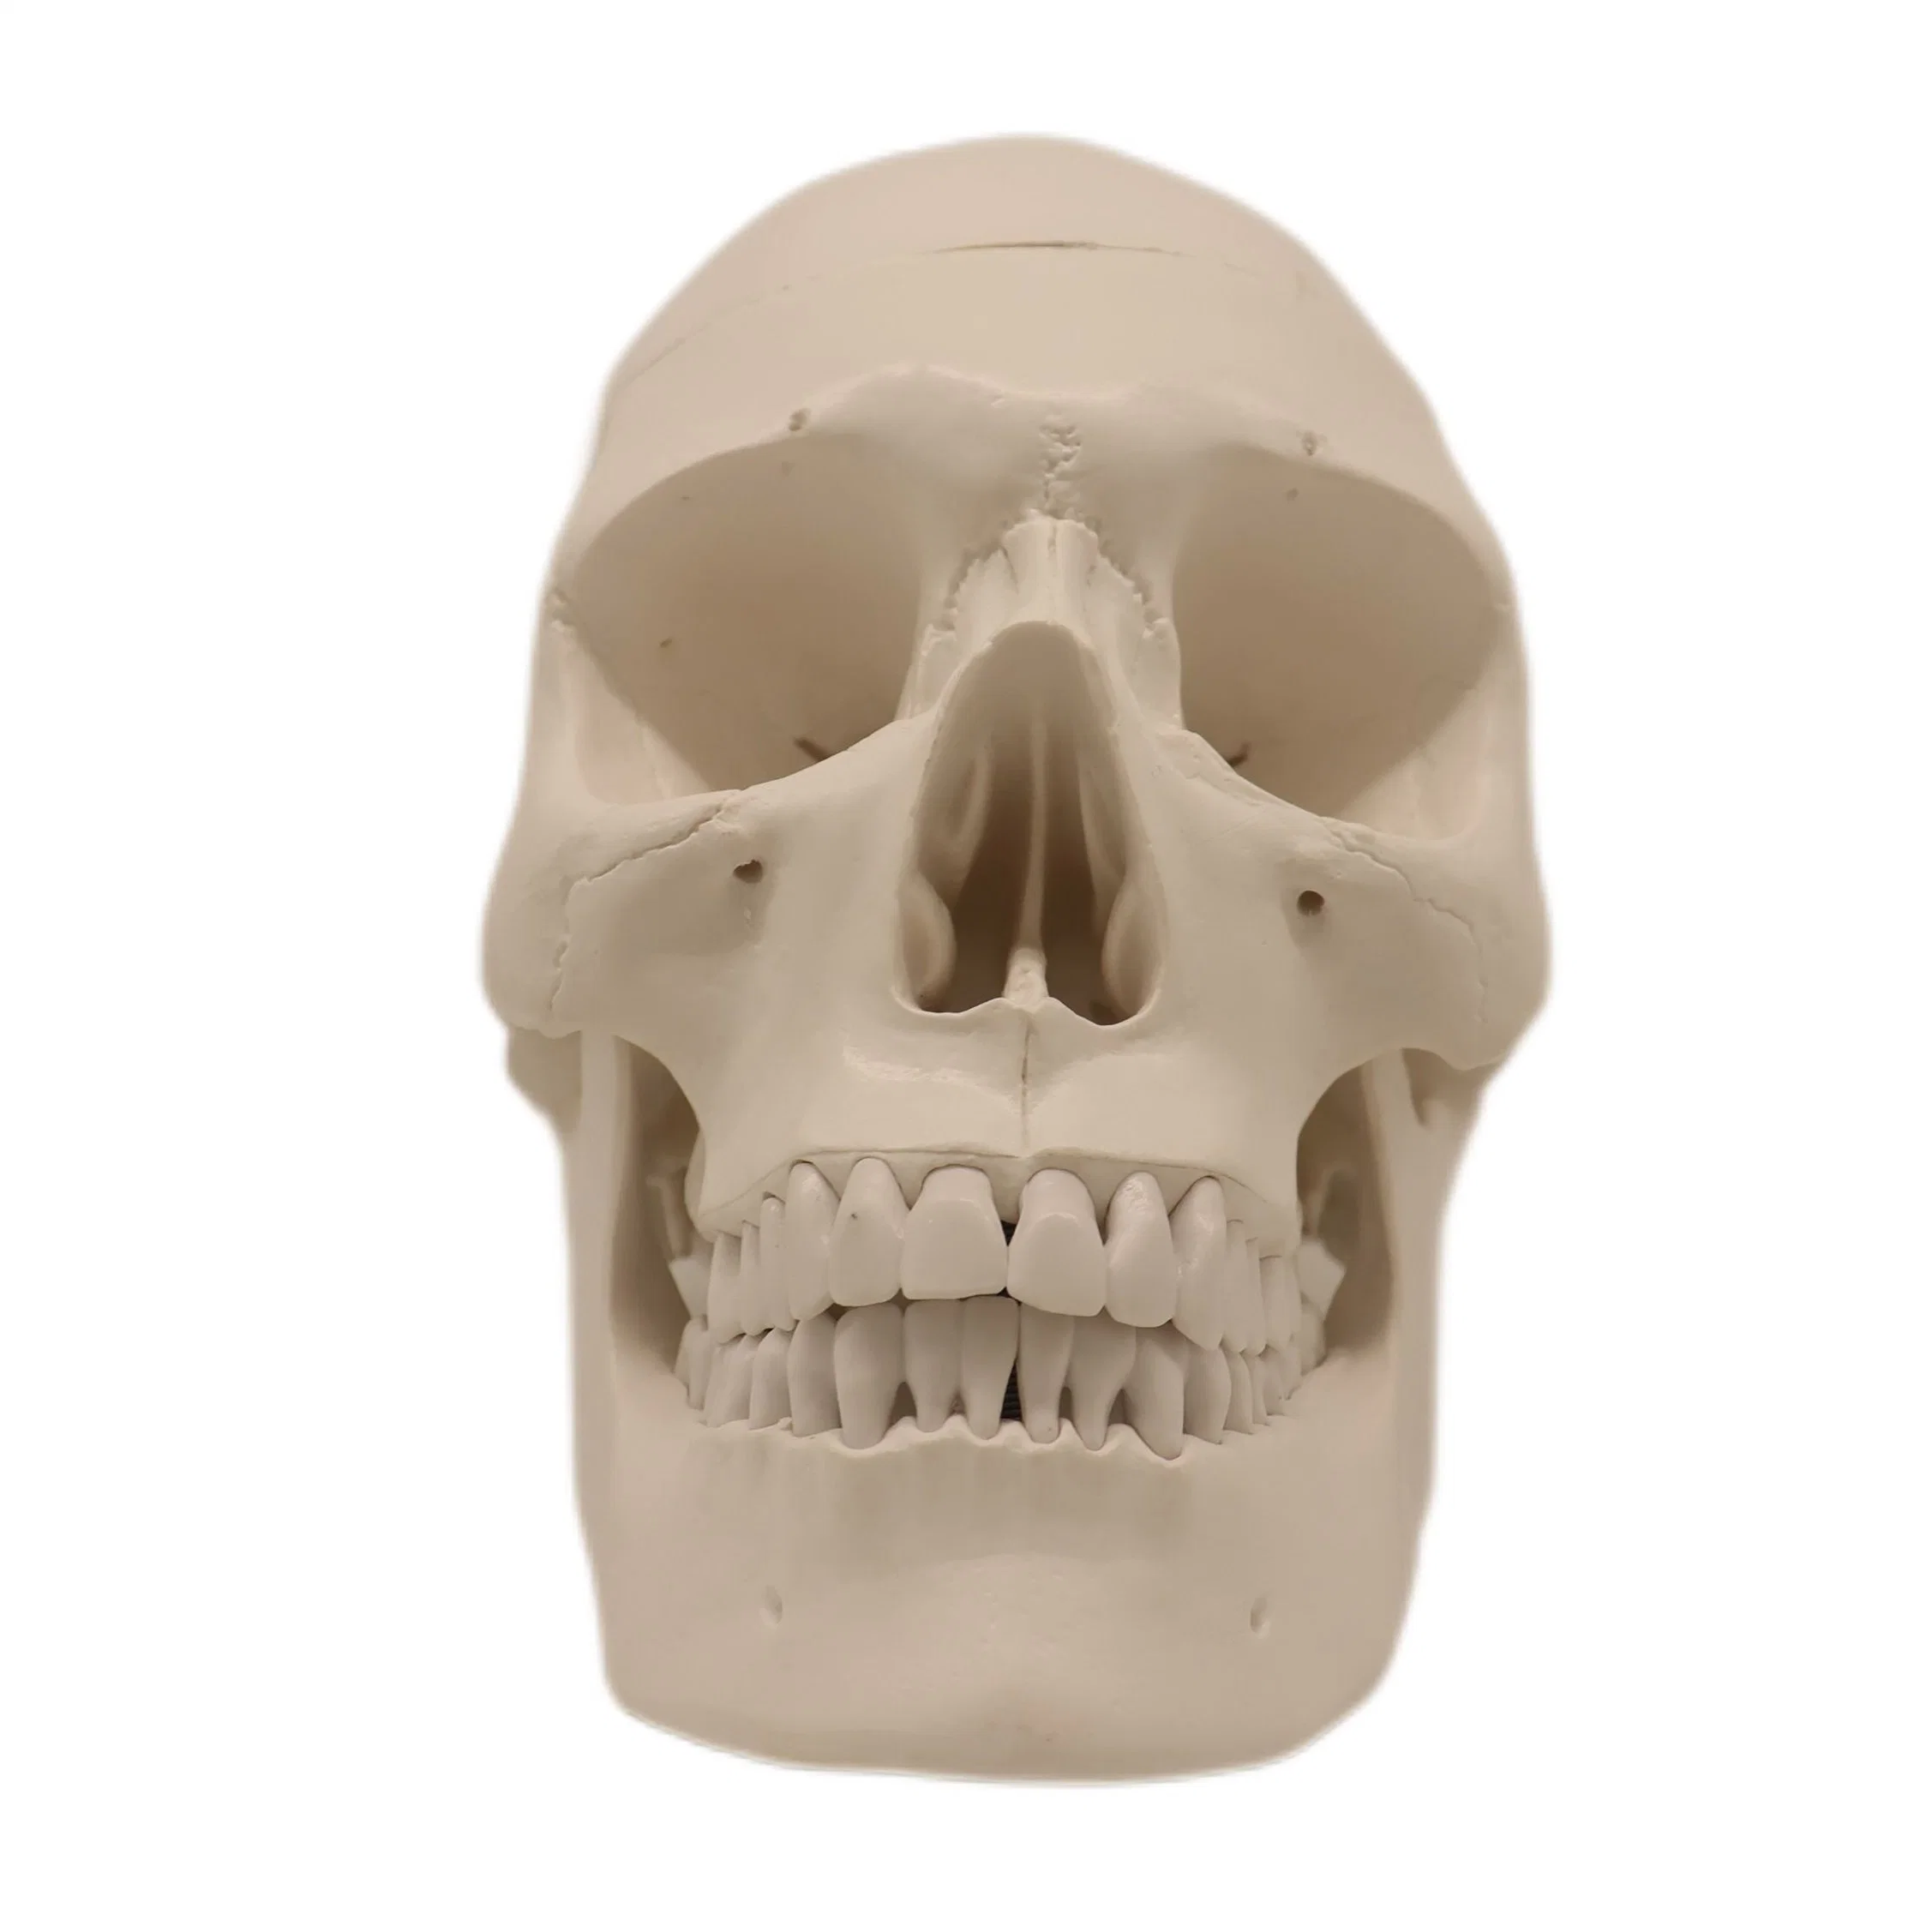 Skull Adulto modelo anatómico de ensino médico com sangue, com venda a quente Vasos e nervos